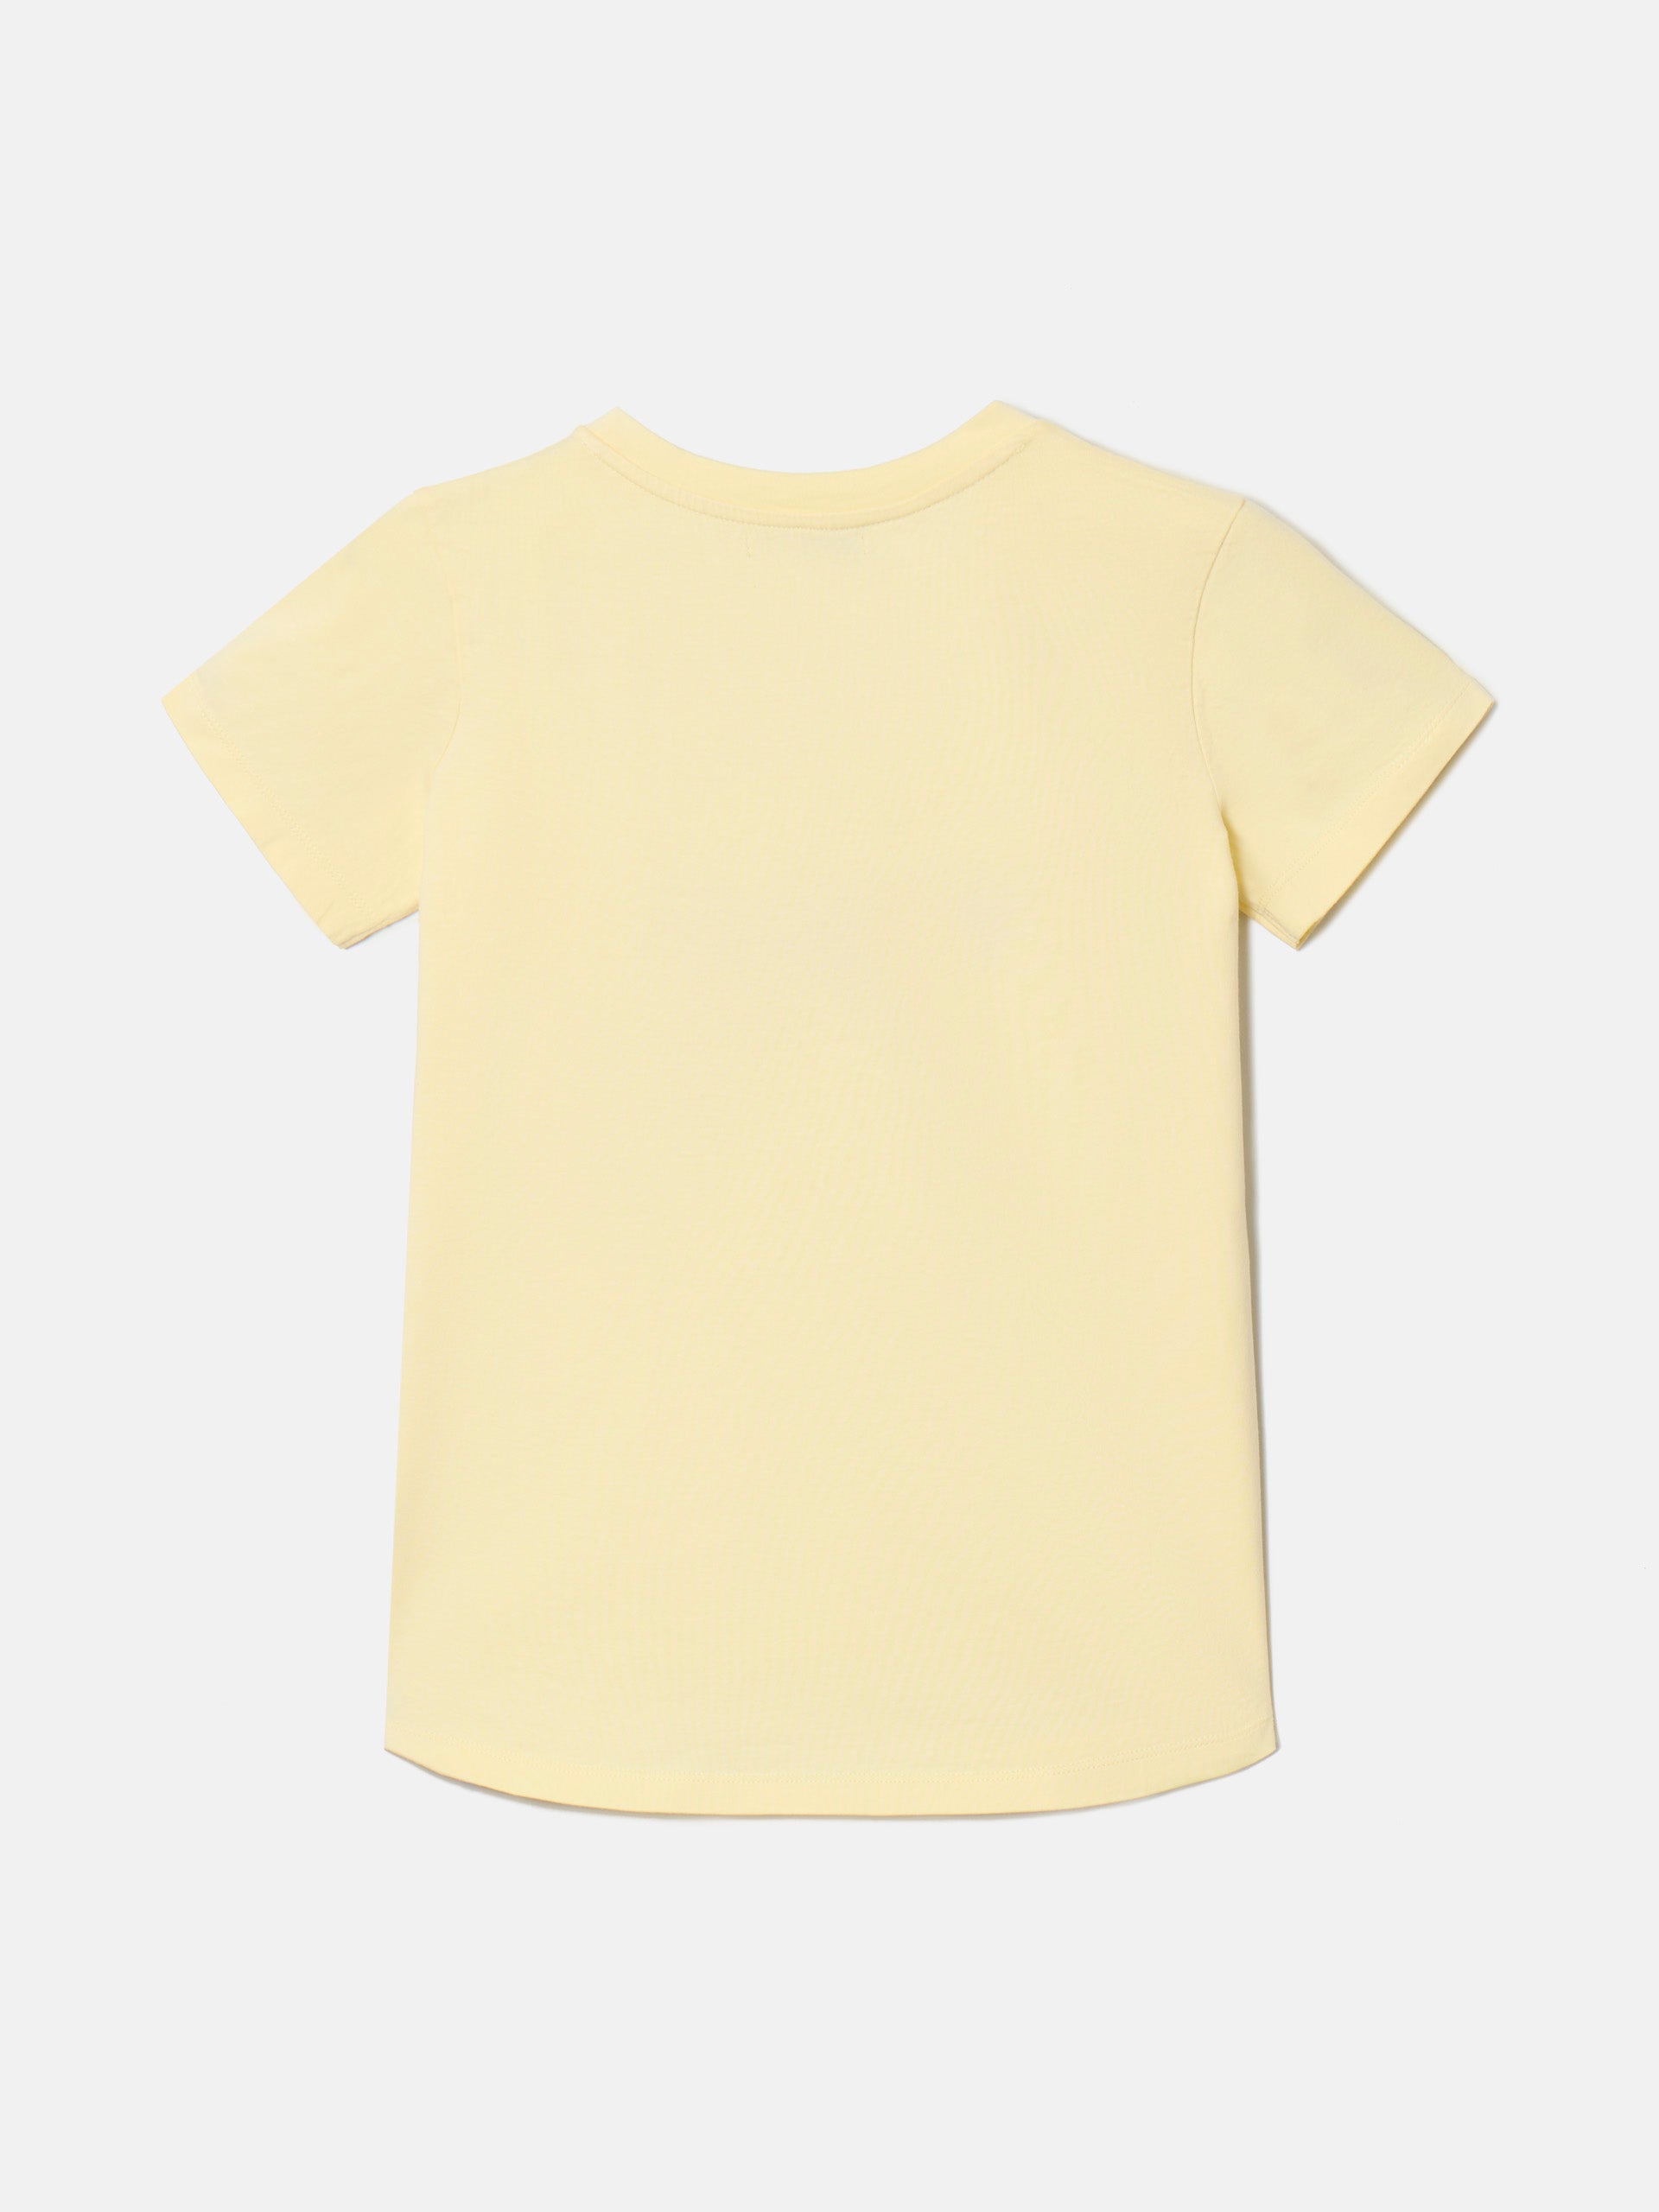 Camiseta woman dibujos etnicos amarilla 